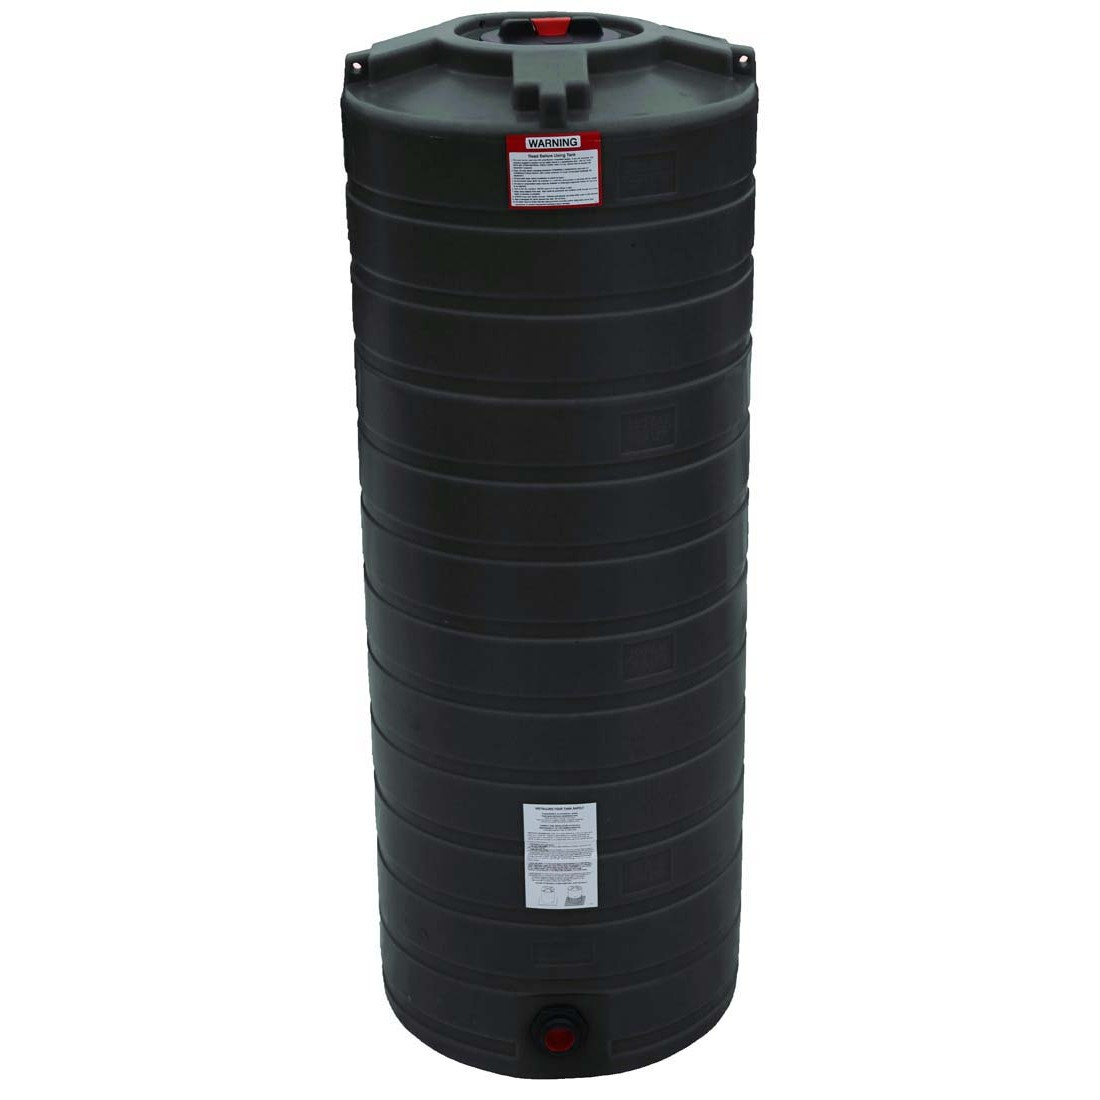 Best ideas about Vertical Water Storage Tank
. Save or Pin 200 Gallon Vertical Water Storage Tank Now.